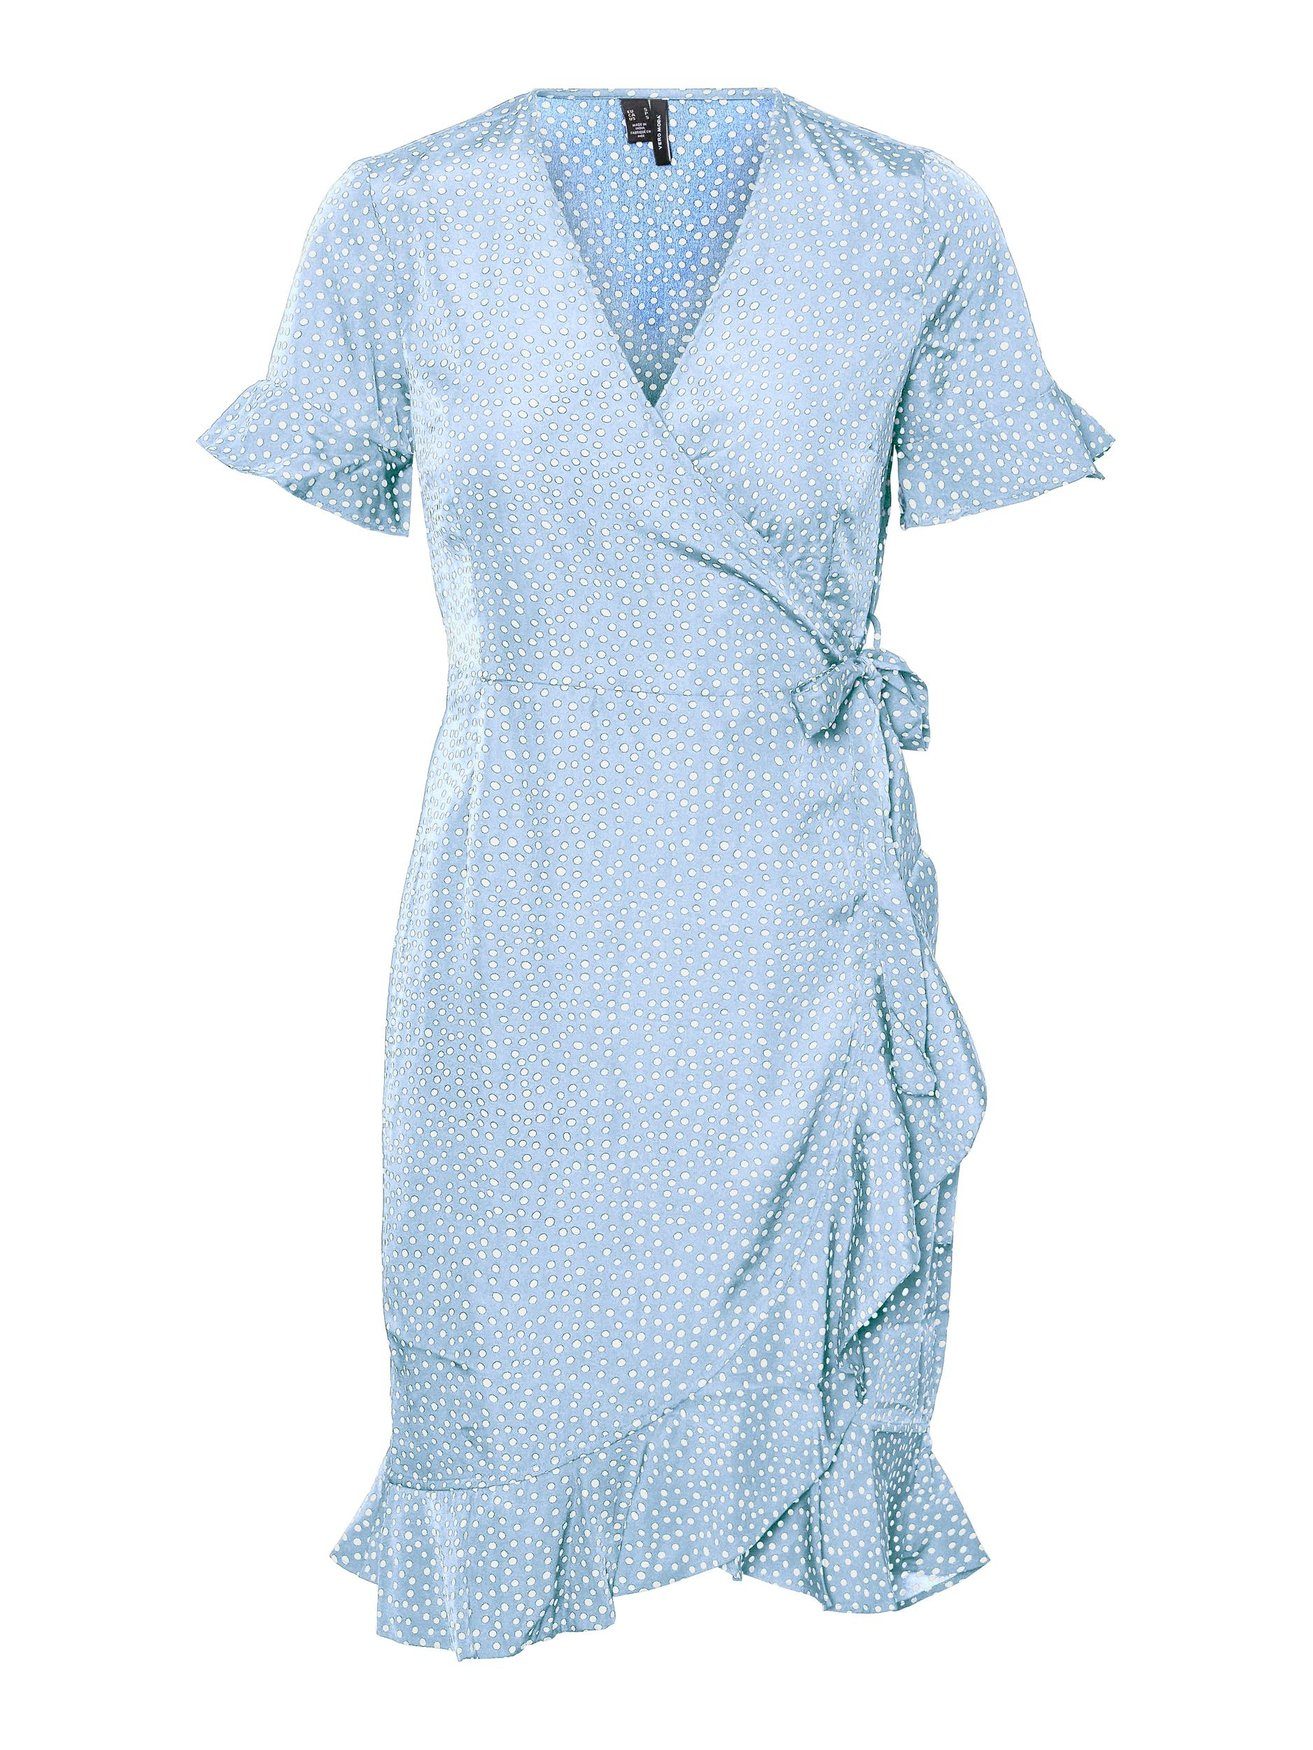 Wickel VMHENNA in Kurzes Blau 5757 Shirtkleid Moda Kleid mit Vero (kurz) Rüschen